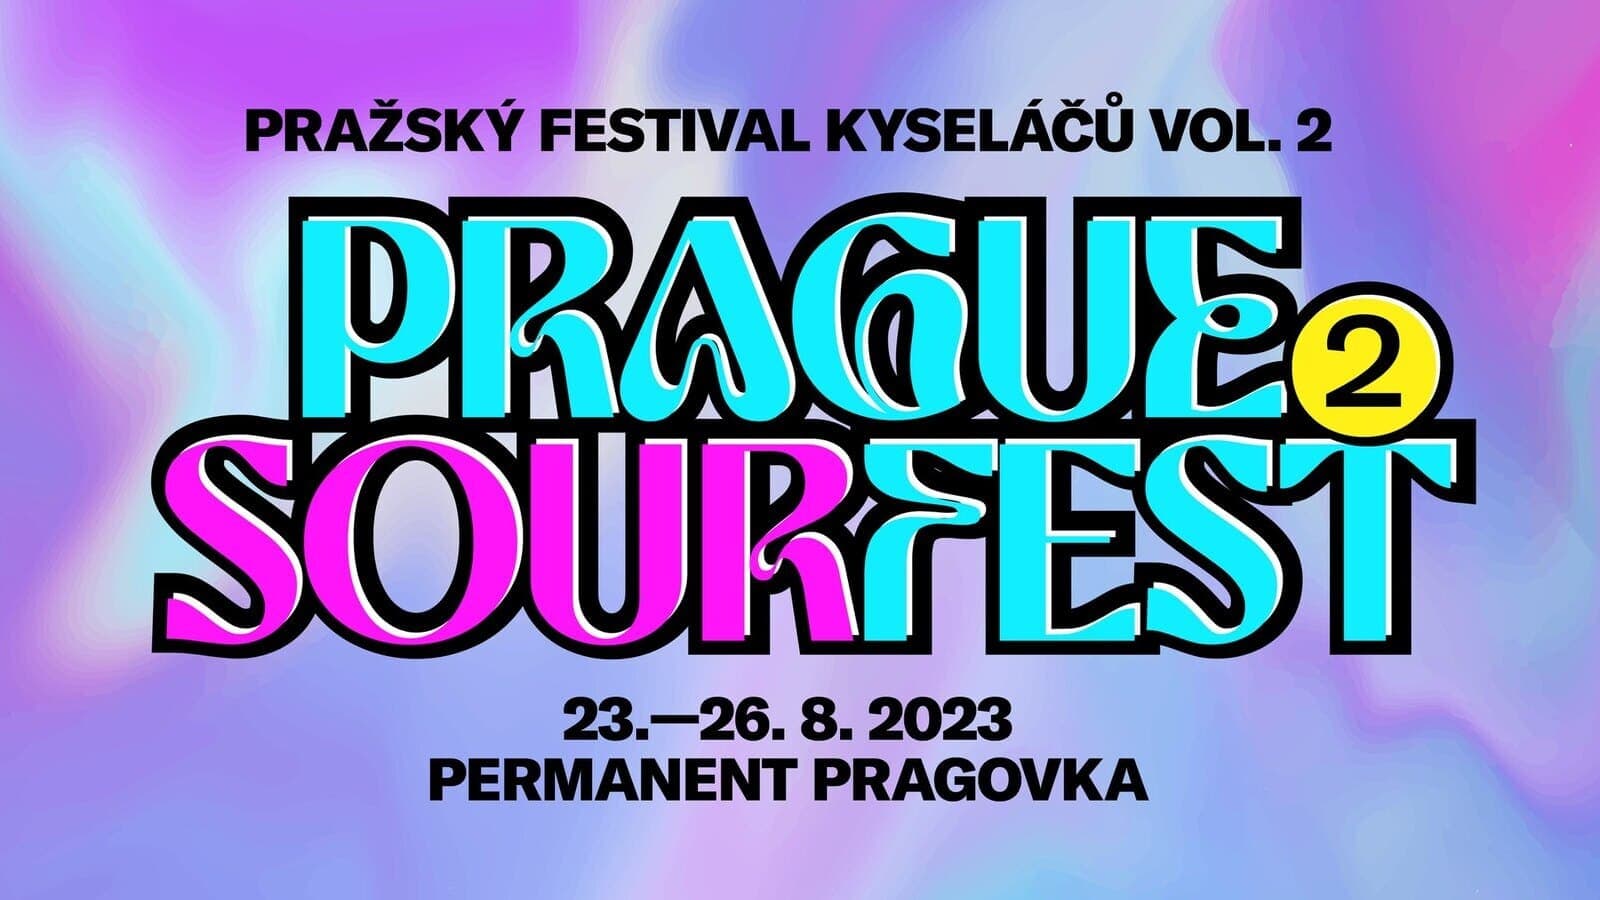 С 23 по 26 августа в Праге пройдет фестиваль кислого пива Pražský festival kyseláčů